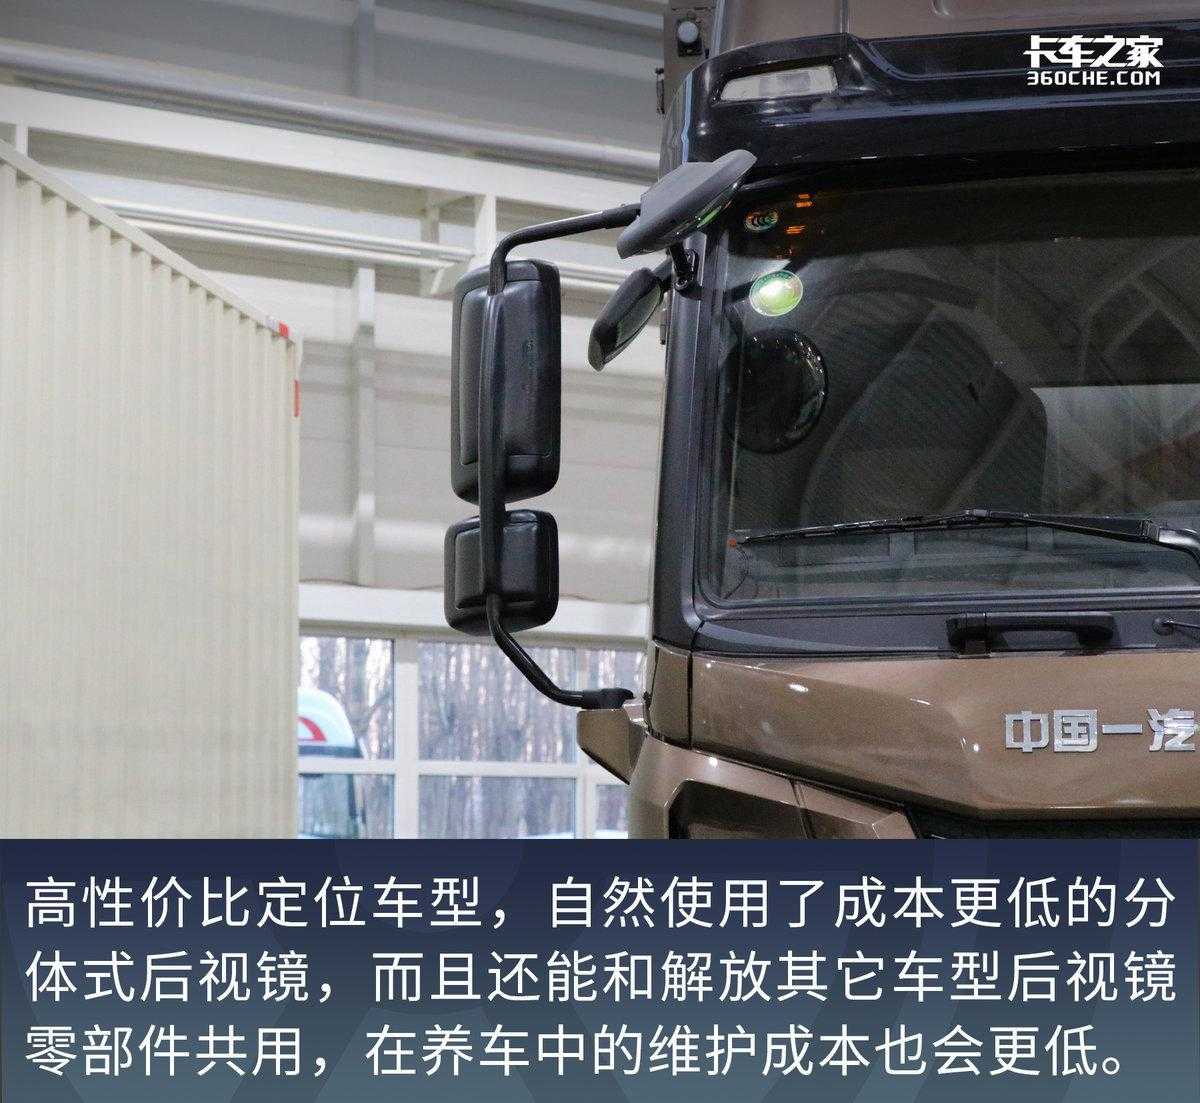 高性价比载货车，货厢容积近60立方米，解放悍VH四轴9米6来了